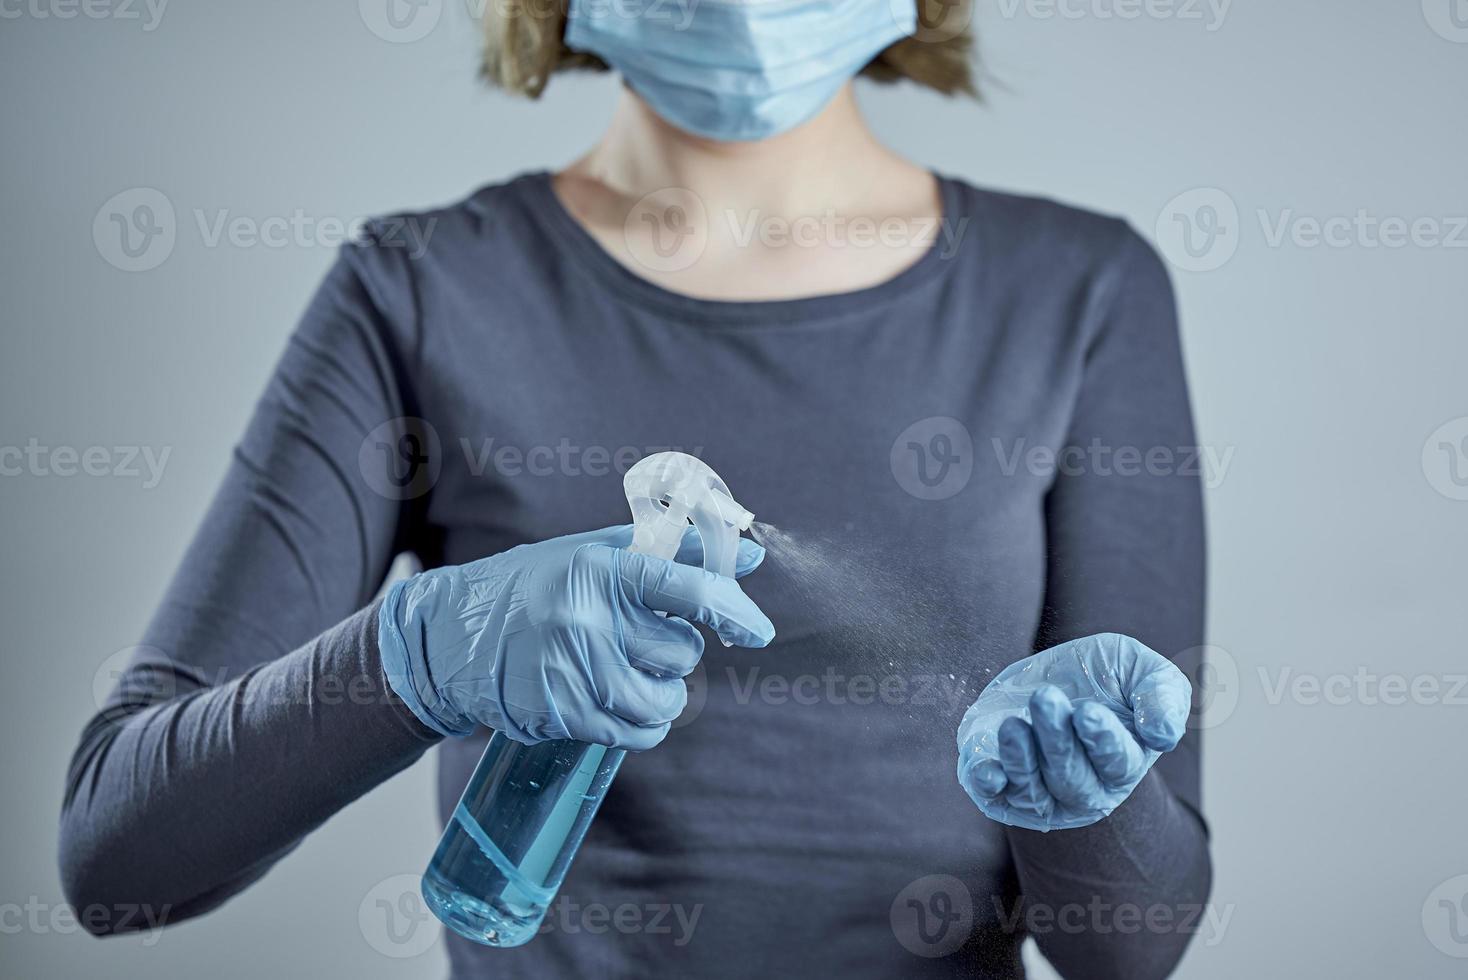 en flicka i en medicinsk mask behandlar sina händer i blåa engångshandskar med desinfektionsmedel på grå bakgrund. spray sanitizer på bakgrunden av en flicka foto